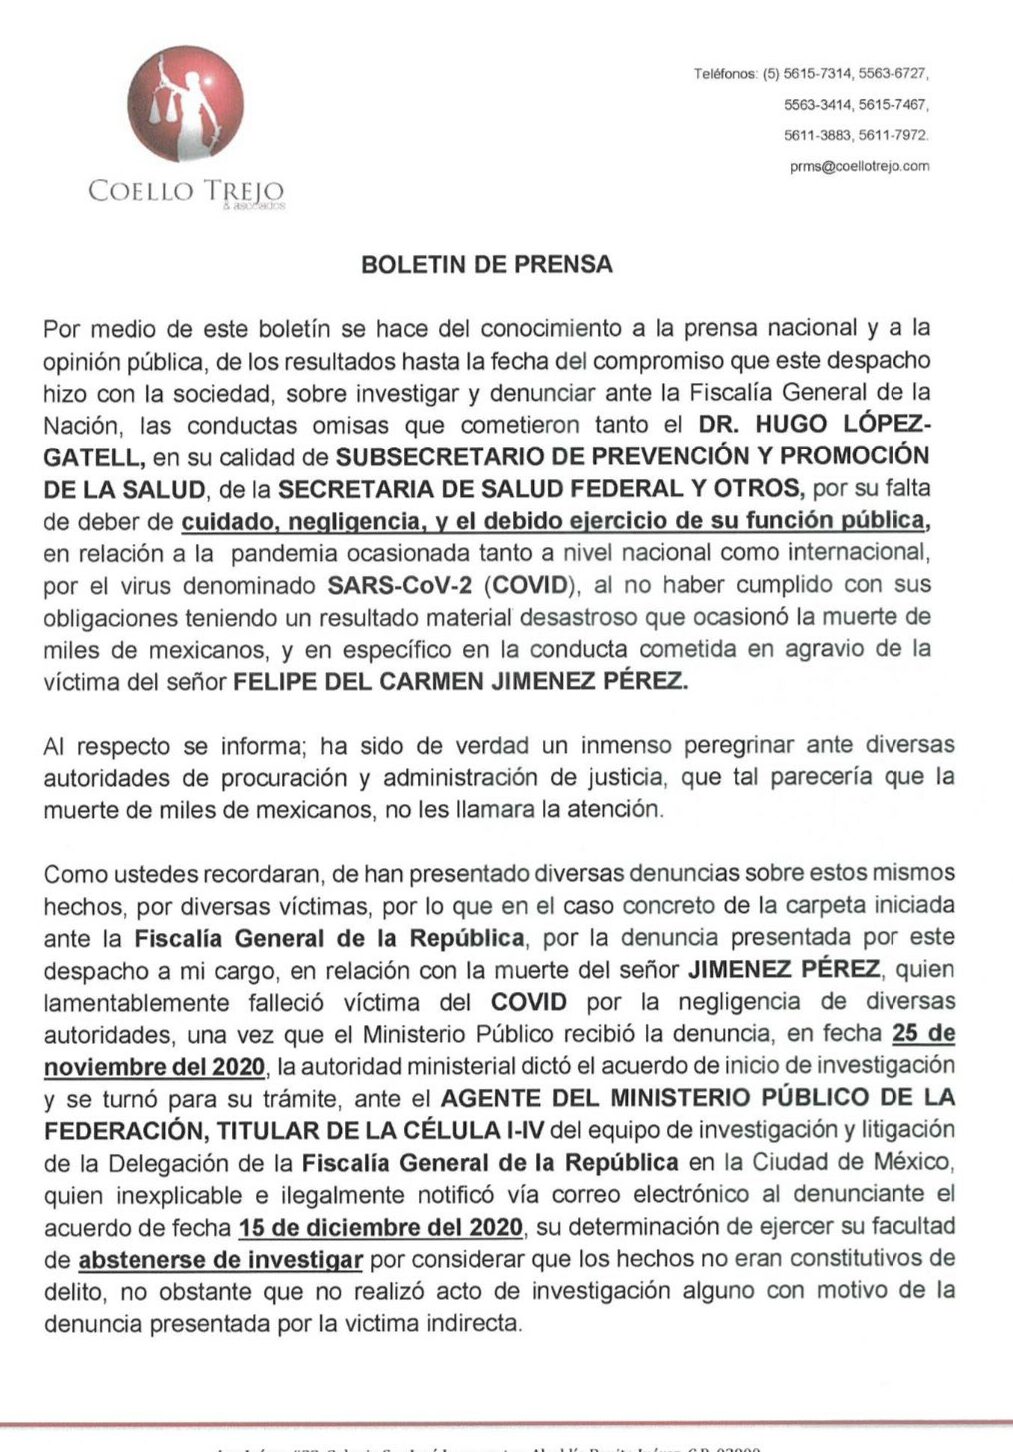 Comunicado oficial del despacho Coello y Trejo que oficializa una investigación en contra de López Gatell.